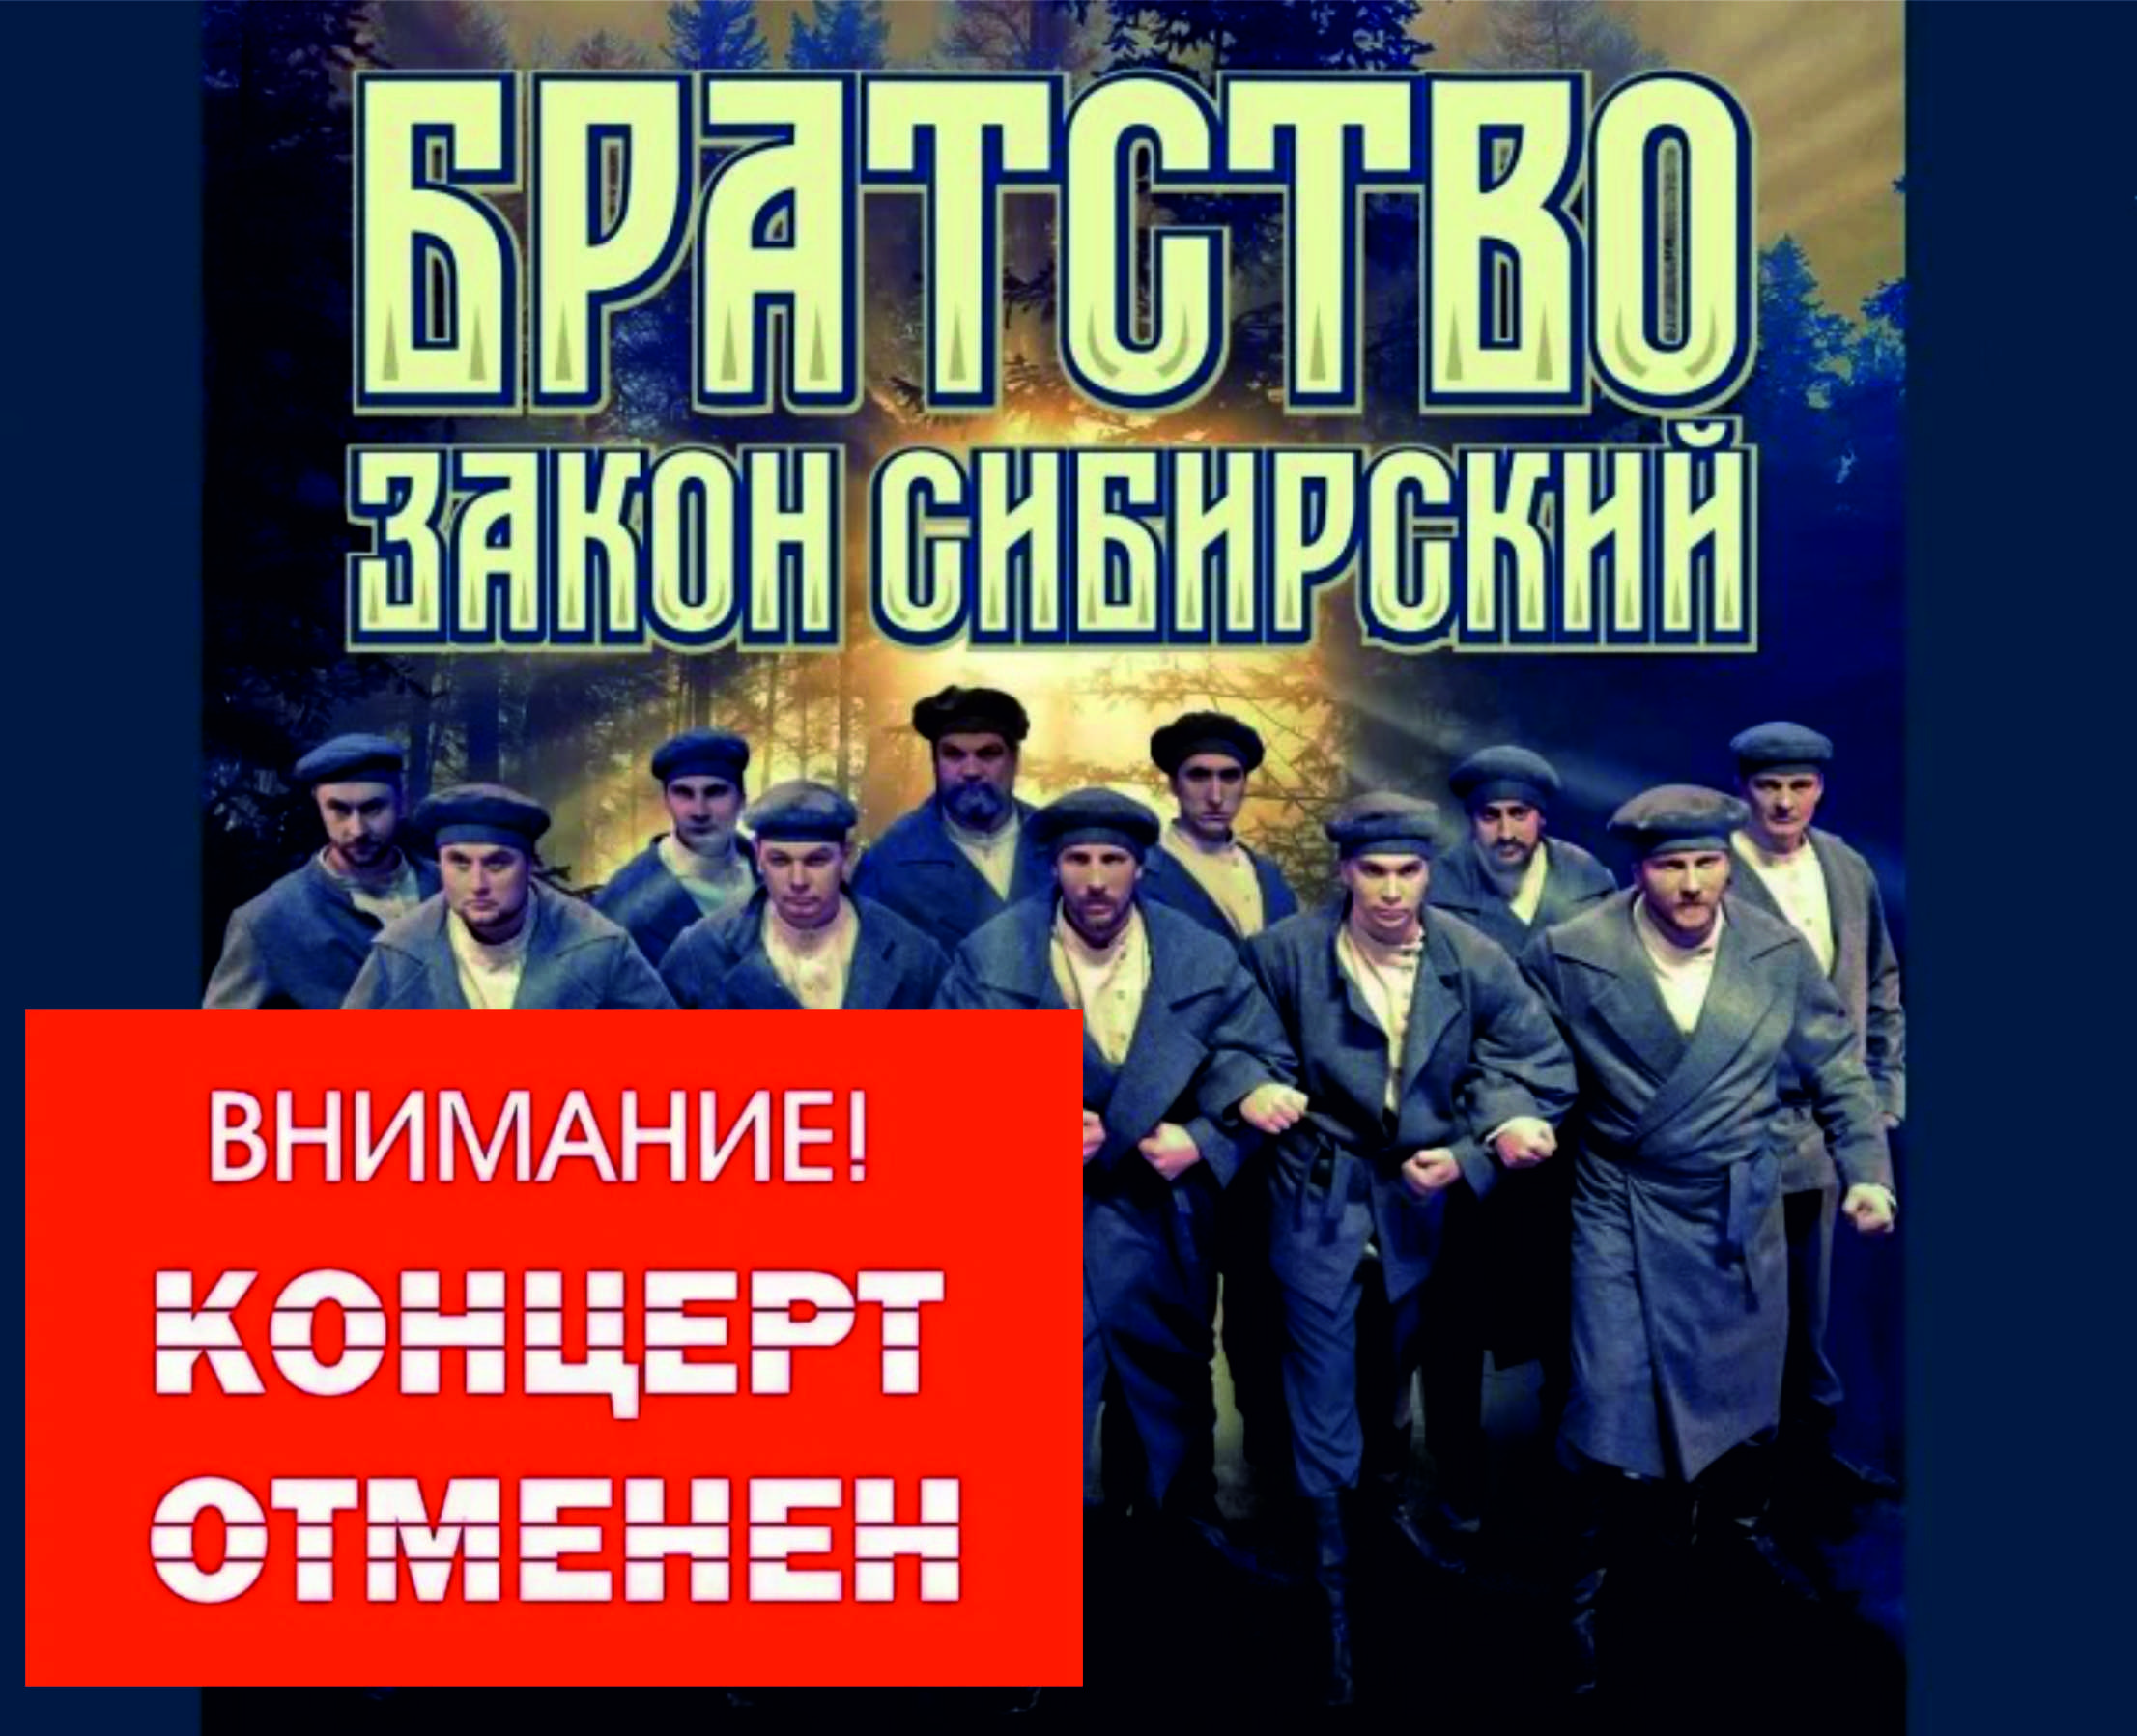 «Братство-закон Сибирский»